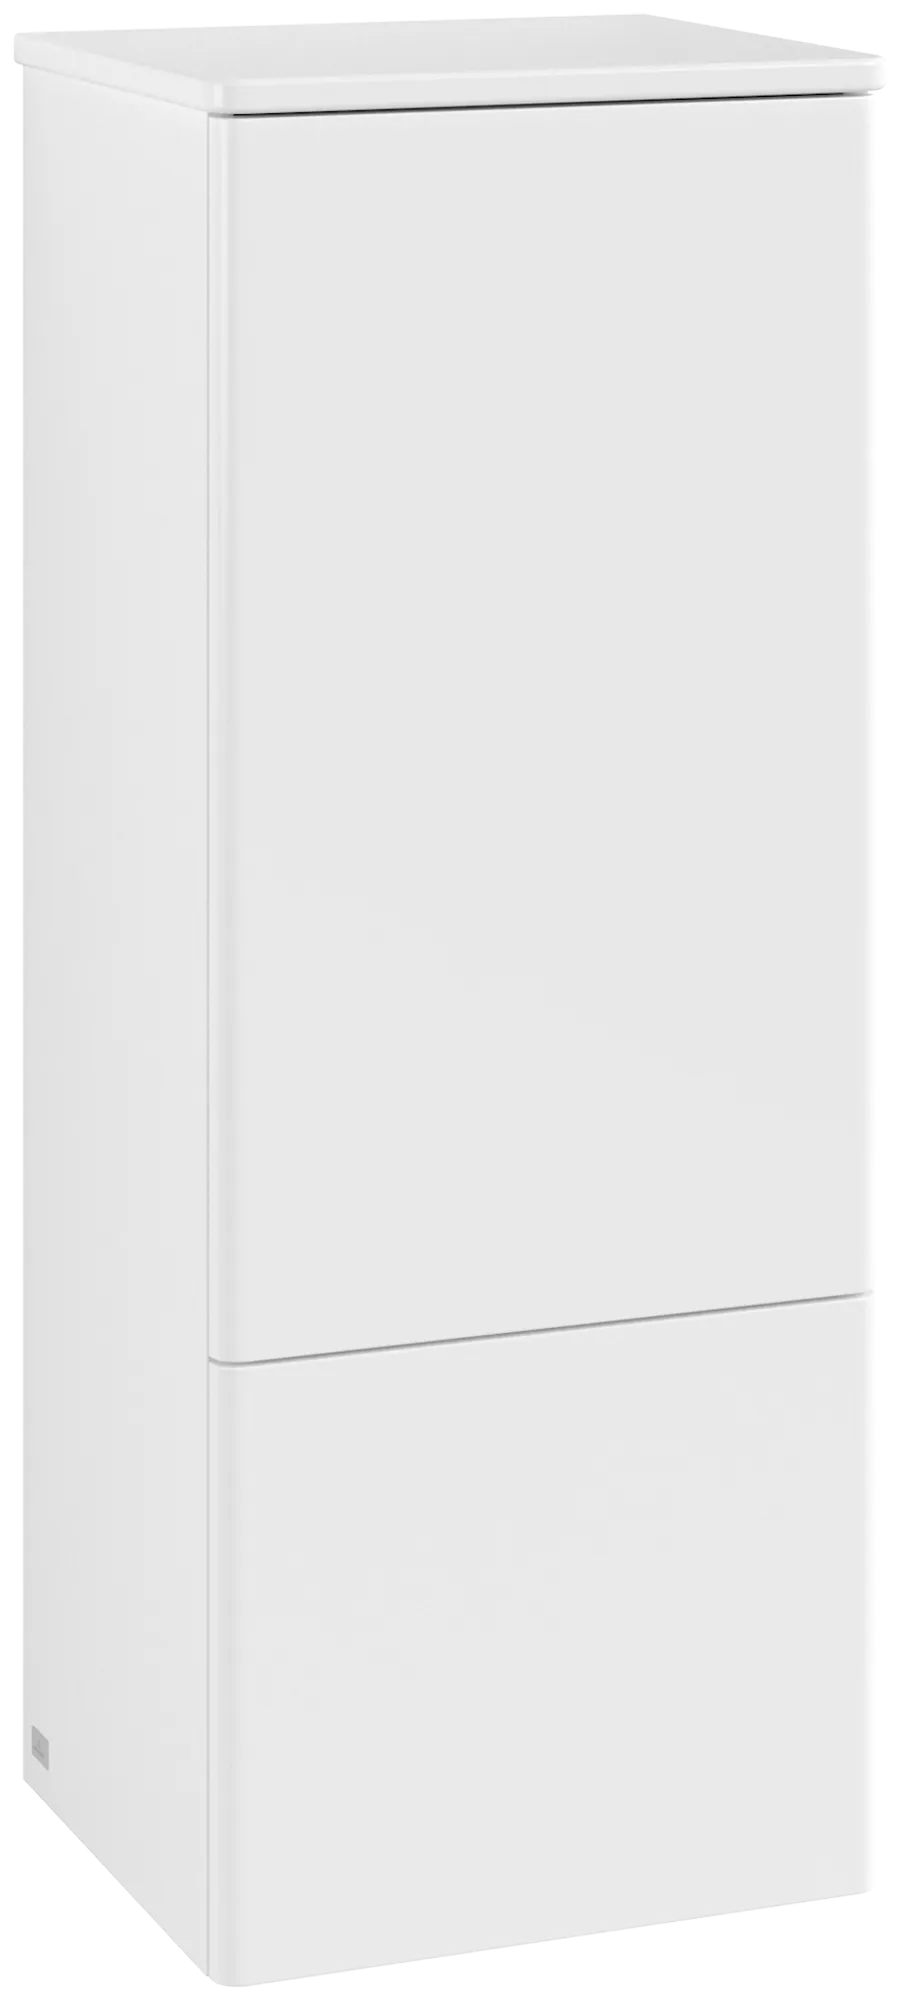 Bild von VILLEROY BOCH Antao Mittelschrank, 1 Tür, 414 x 1039 x 356 mm, Front ohne Struktur, White Matt Lacquer / White Matt Lacquer #L43000MT